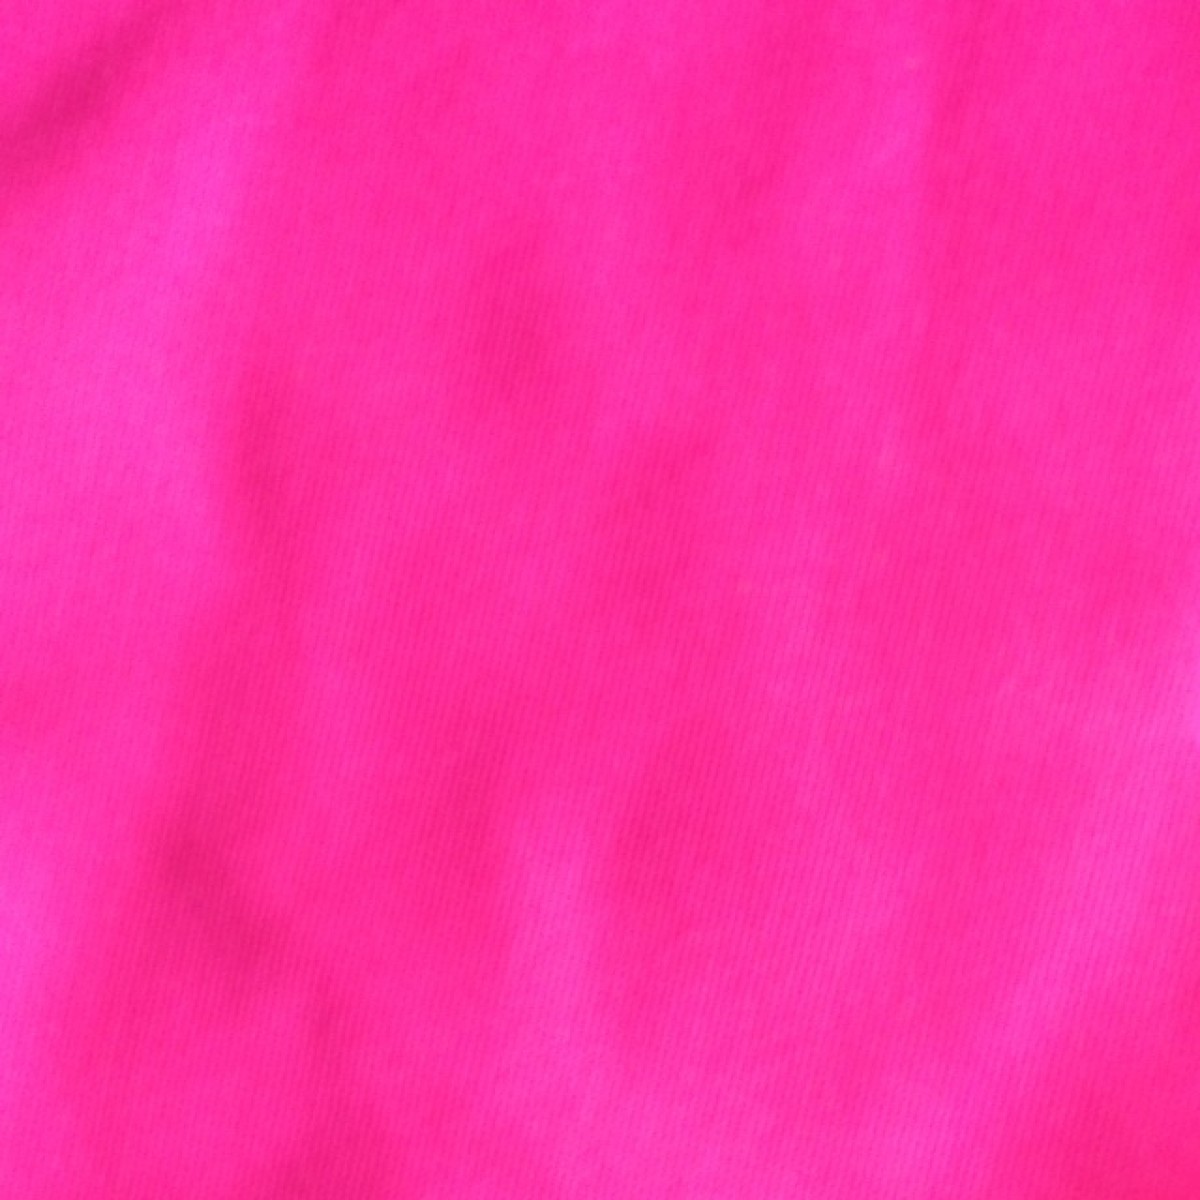 Color Neon Pink Pixshark Image Galleries With